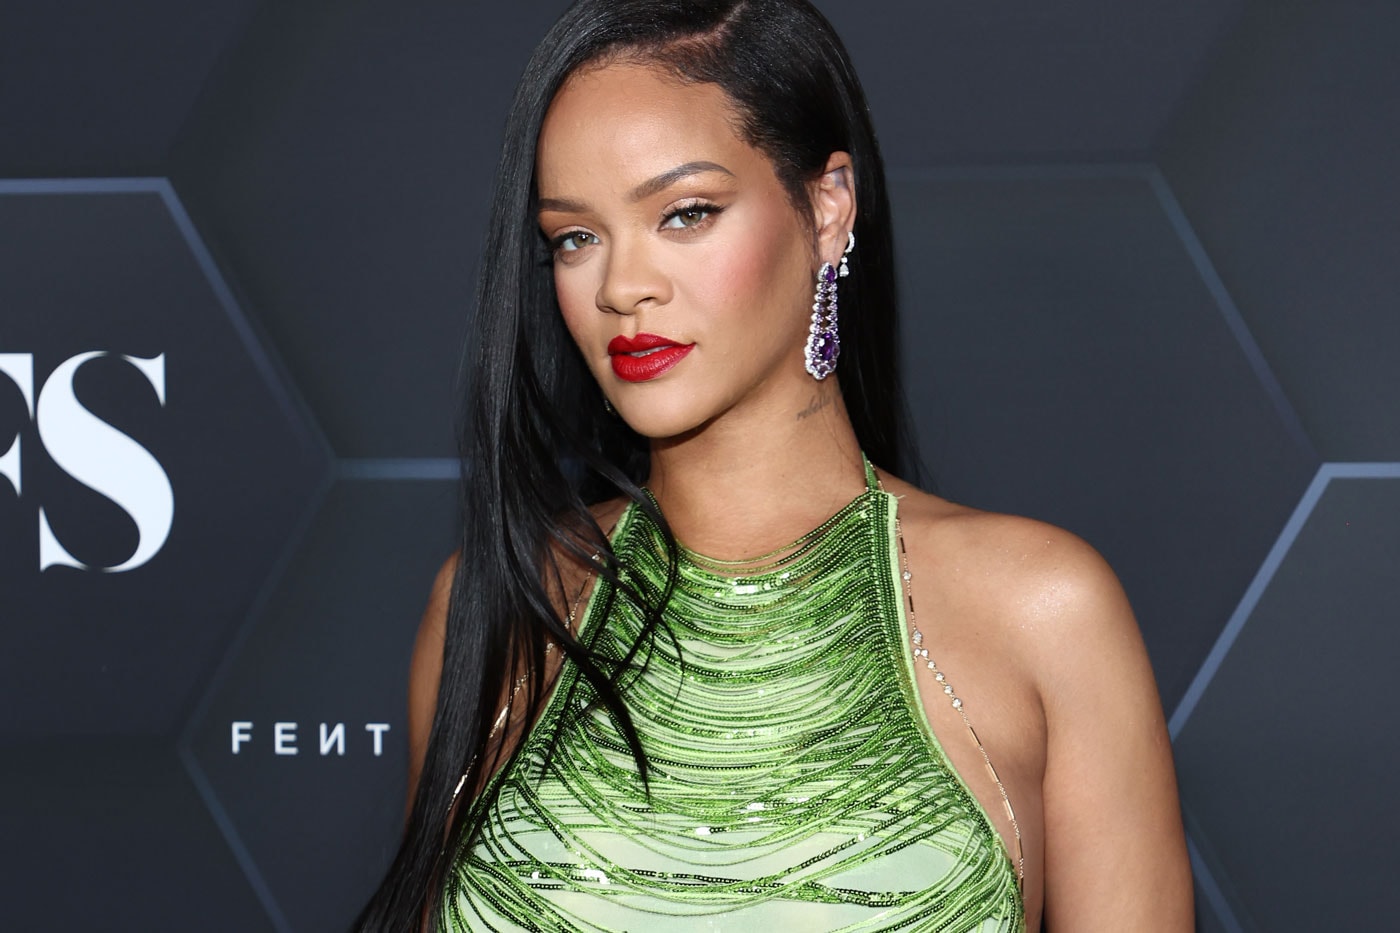 リアーナが2022年の世界長者番付に初ランクイン Rihanna Makes Her Debut on Forbes Annual Billionaires List fenty beauty fenty skin fenty cosmetics savage x fenty baby barbados asap rocky singer artist entrepreneur